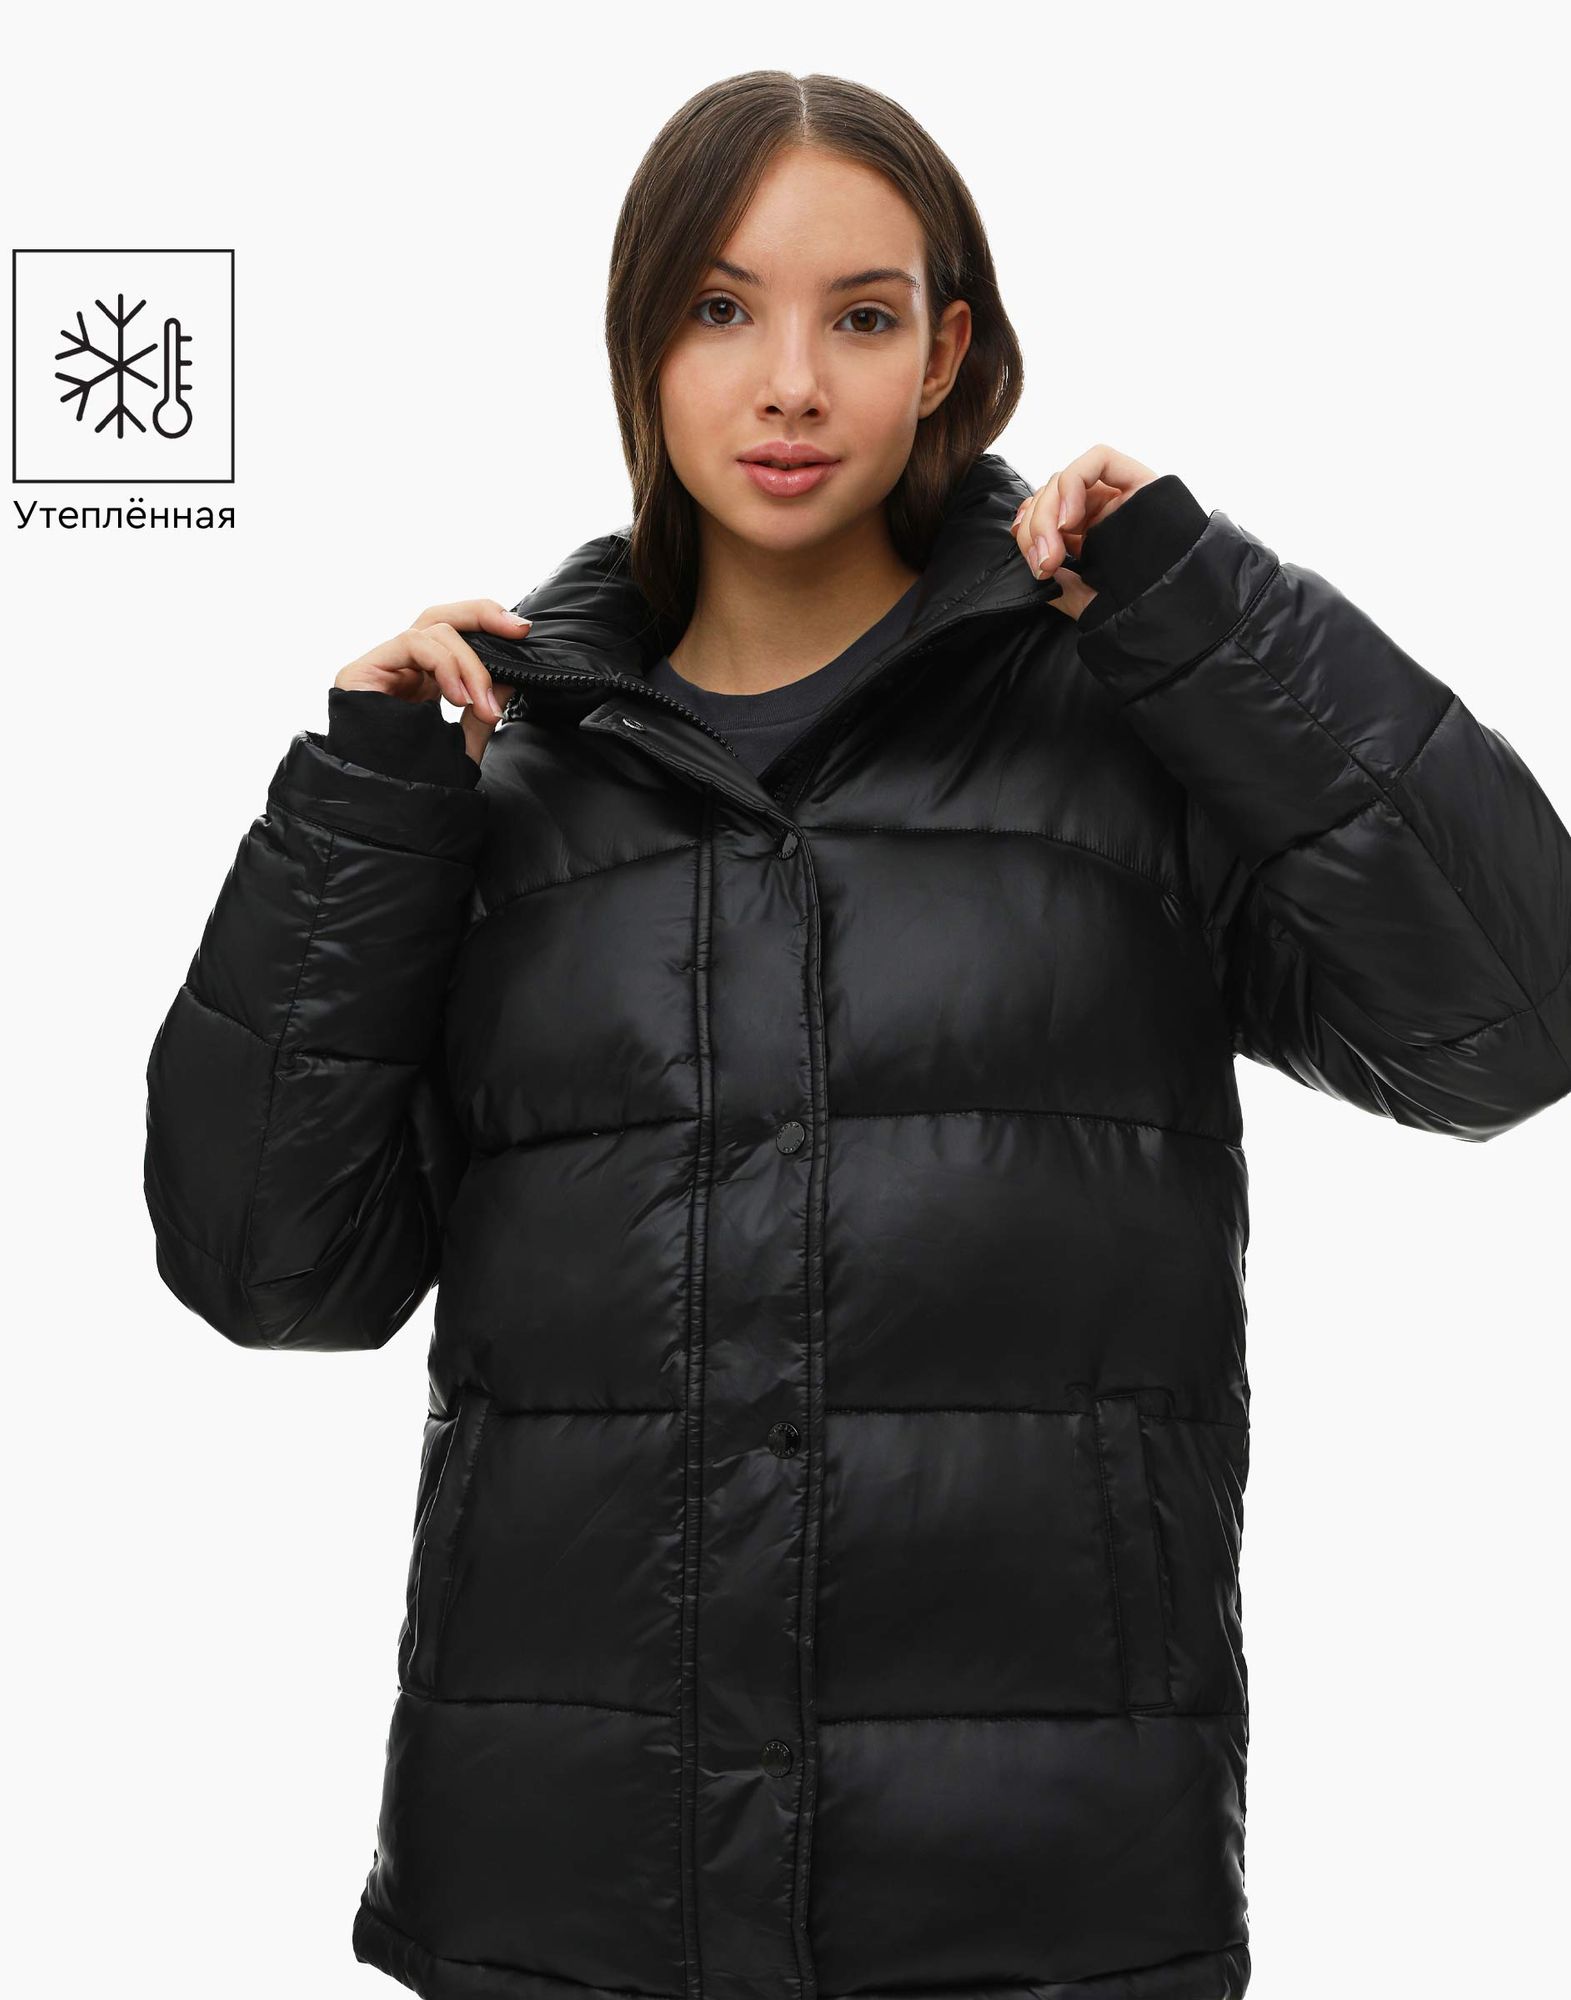 Чёрная утеплённая куртка с капюшоном для девочки -0